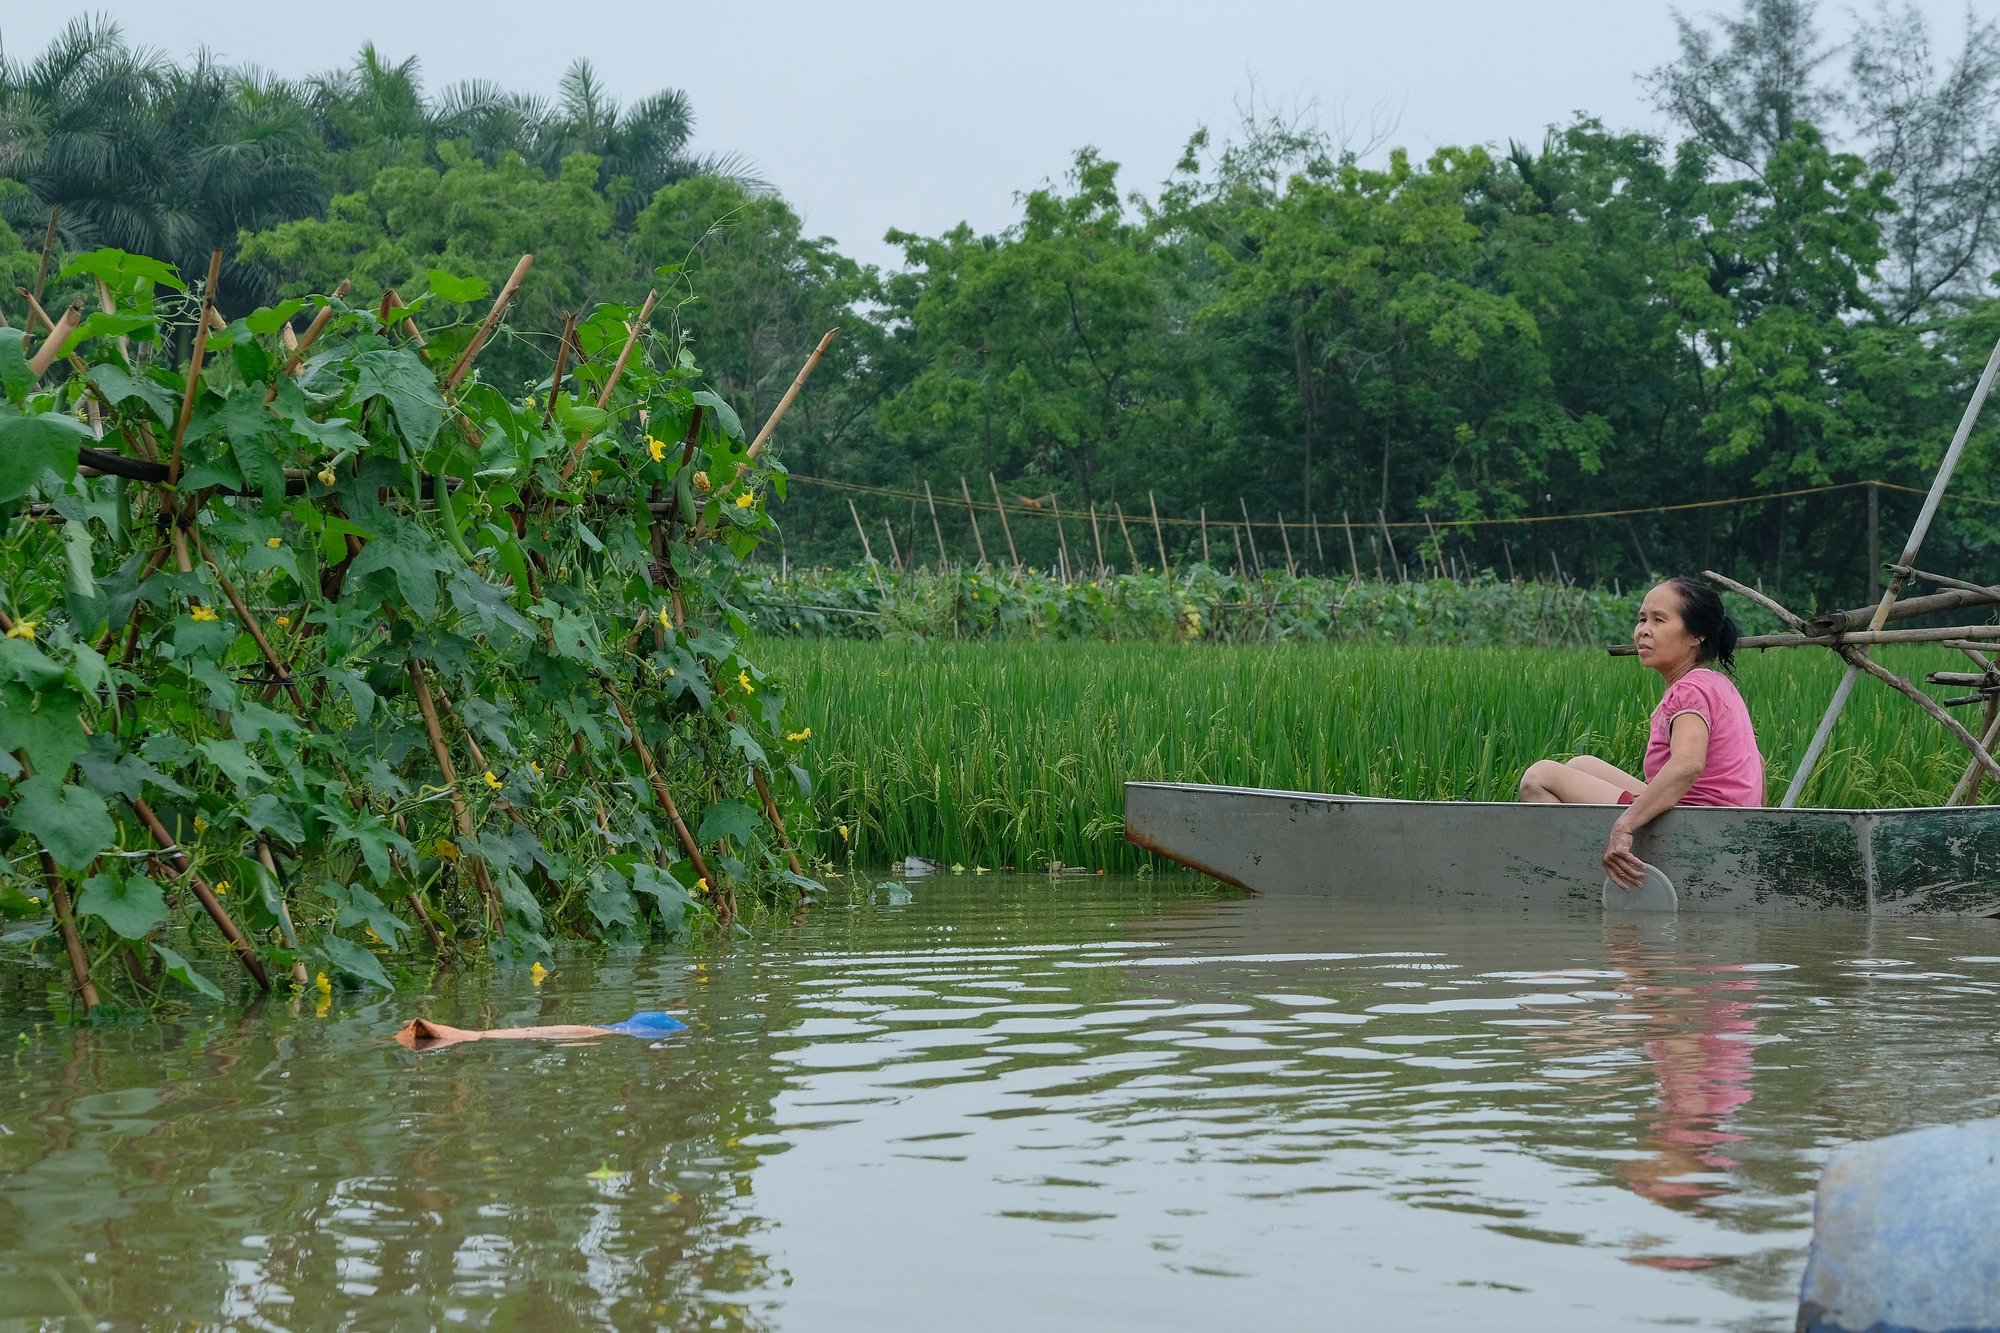 Mưa ngớt, người dân Hà Nội vẫn lội bì bõm đánh cá quanh nhà, nơi mò mẫm cắt hoa vớt vát tài sản - Ảnh 19.